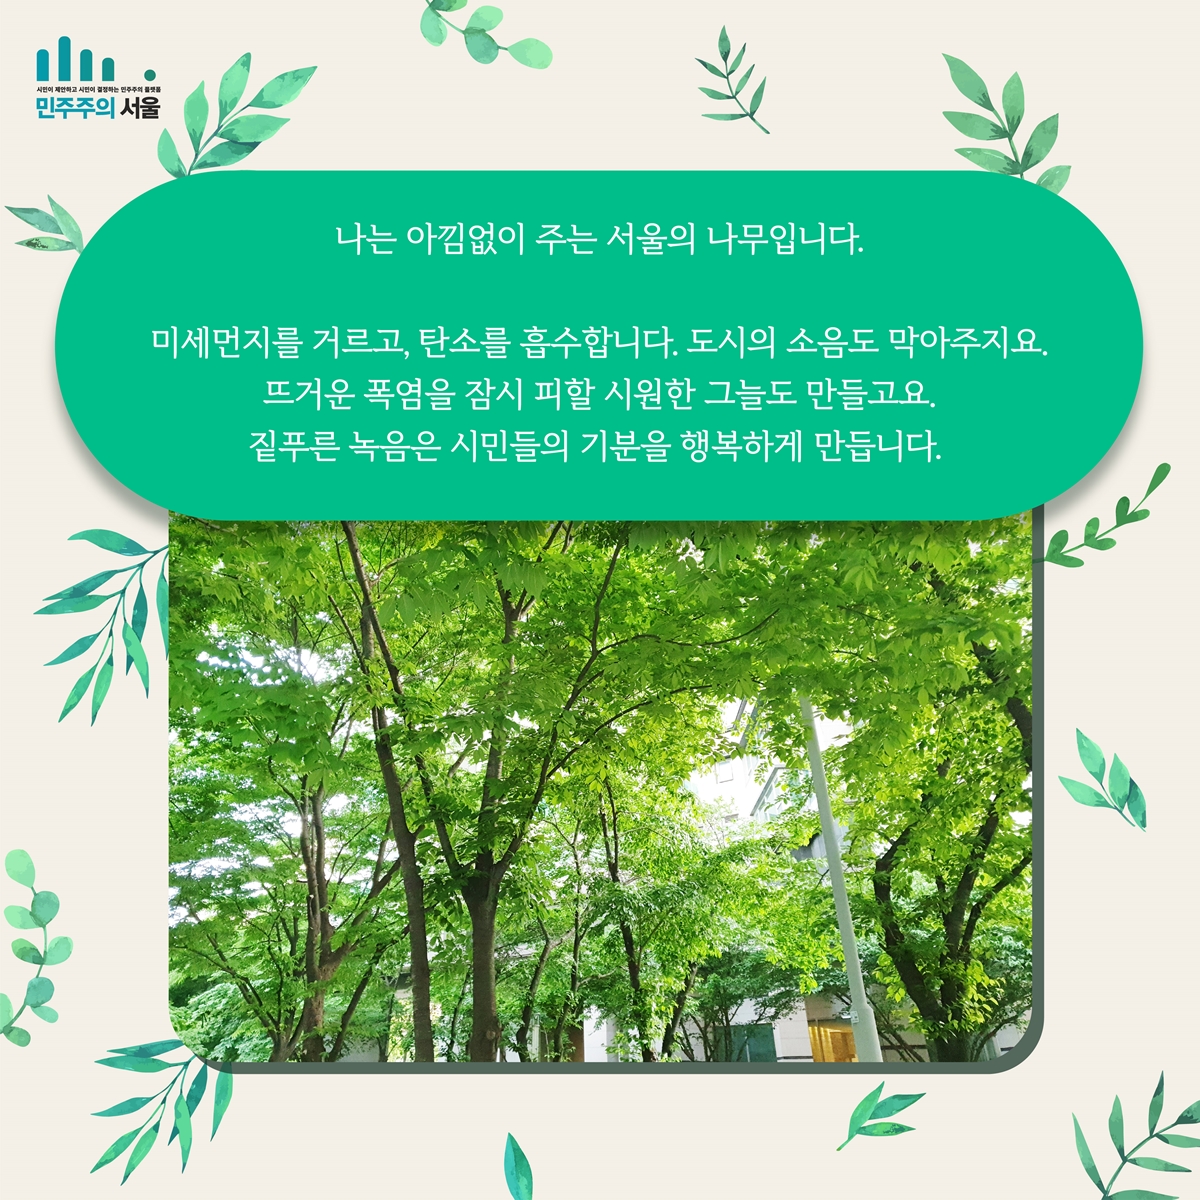 나는 아낌없이 주는 서울의 나무입니다. 미세먼지 거르고, 탄소를 흡수합니다. 도시의 소음도 막아주지요. 뜨거운 폭염을 잠시 피할 시원한 그늘도 만들고요. 짙푸른 녹음은 시민들의 기분을 행복하게 만듭니다.